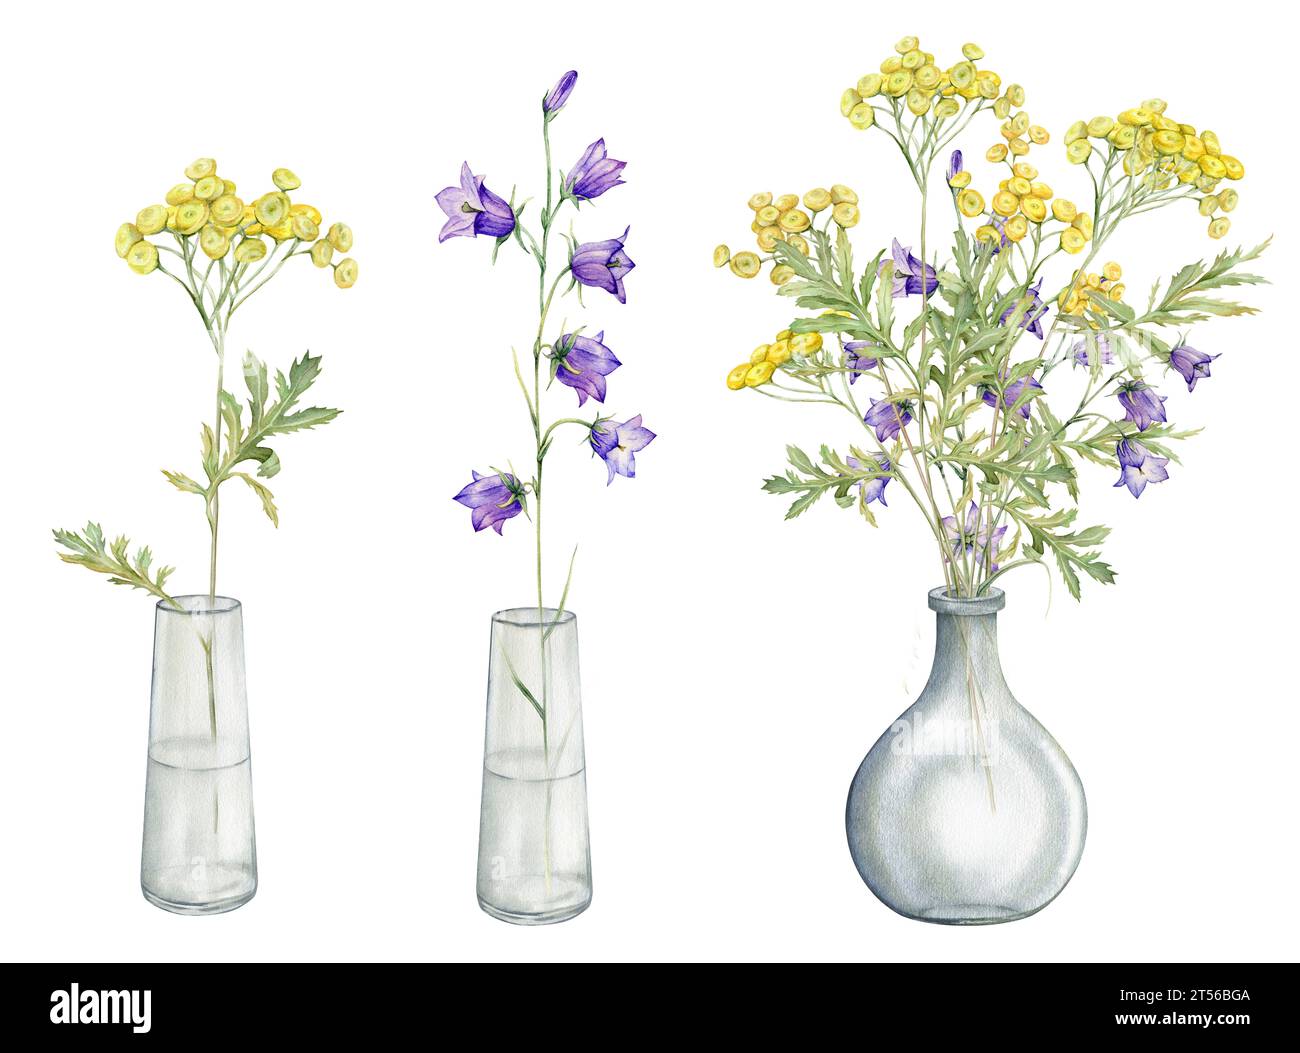 Illustration botanique aquarelle sur fond blanc isolé. Clipart de fleurs de prairie et de forêt dans un vase en verre. Fleurs jaunes des champs - commun Banque D'Images